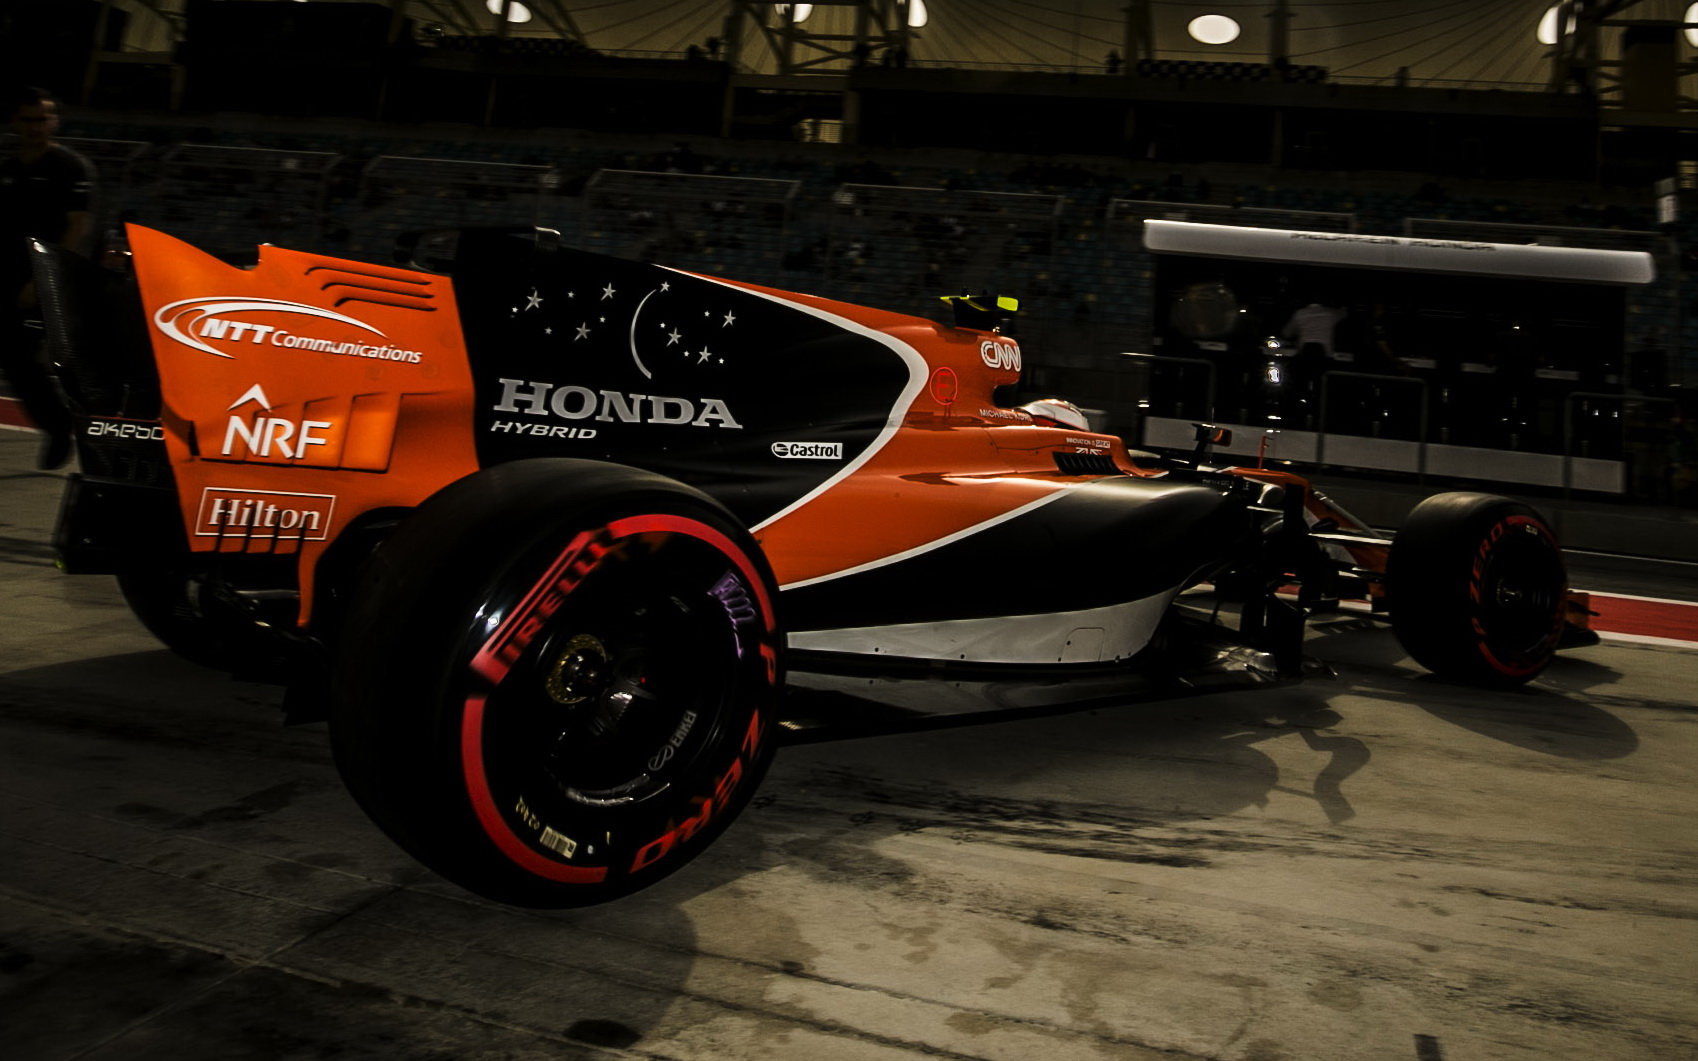 Šasi MCL32 je dobré, McLaren jej dále usilovně vyvíjí a trpělivě čeká na zlepšení Hondy